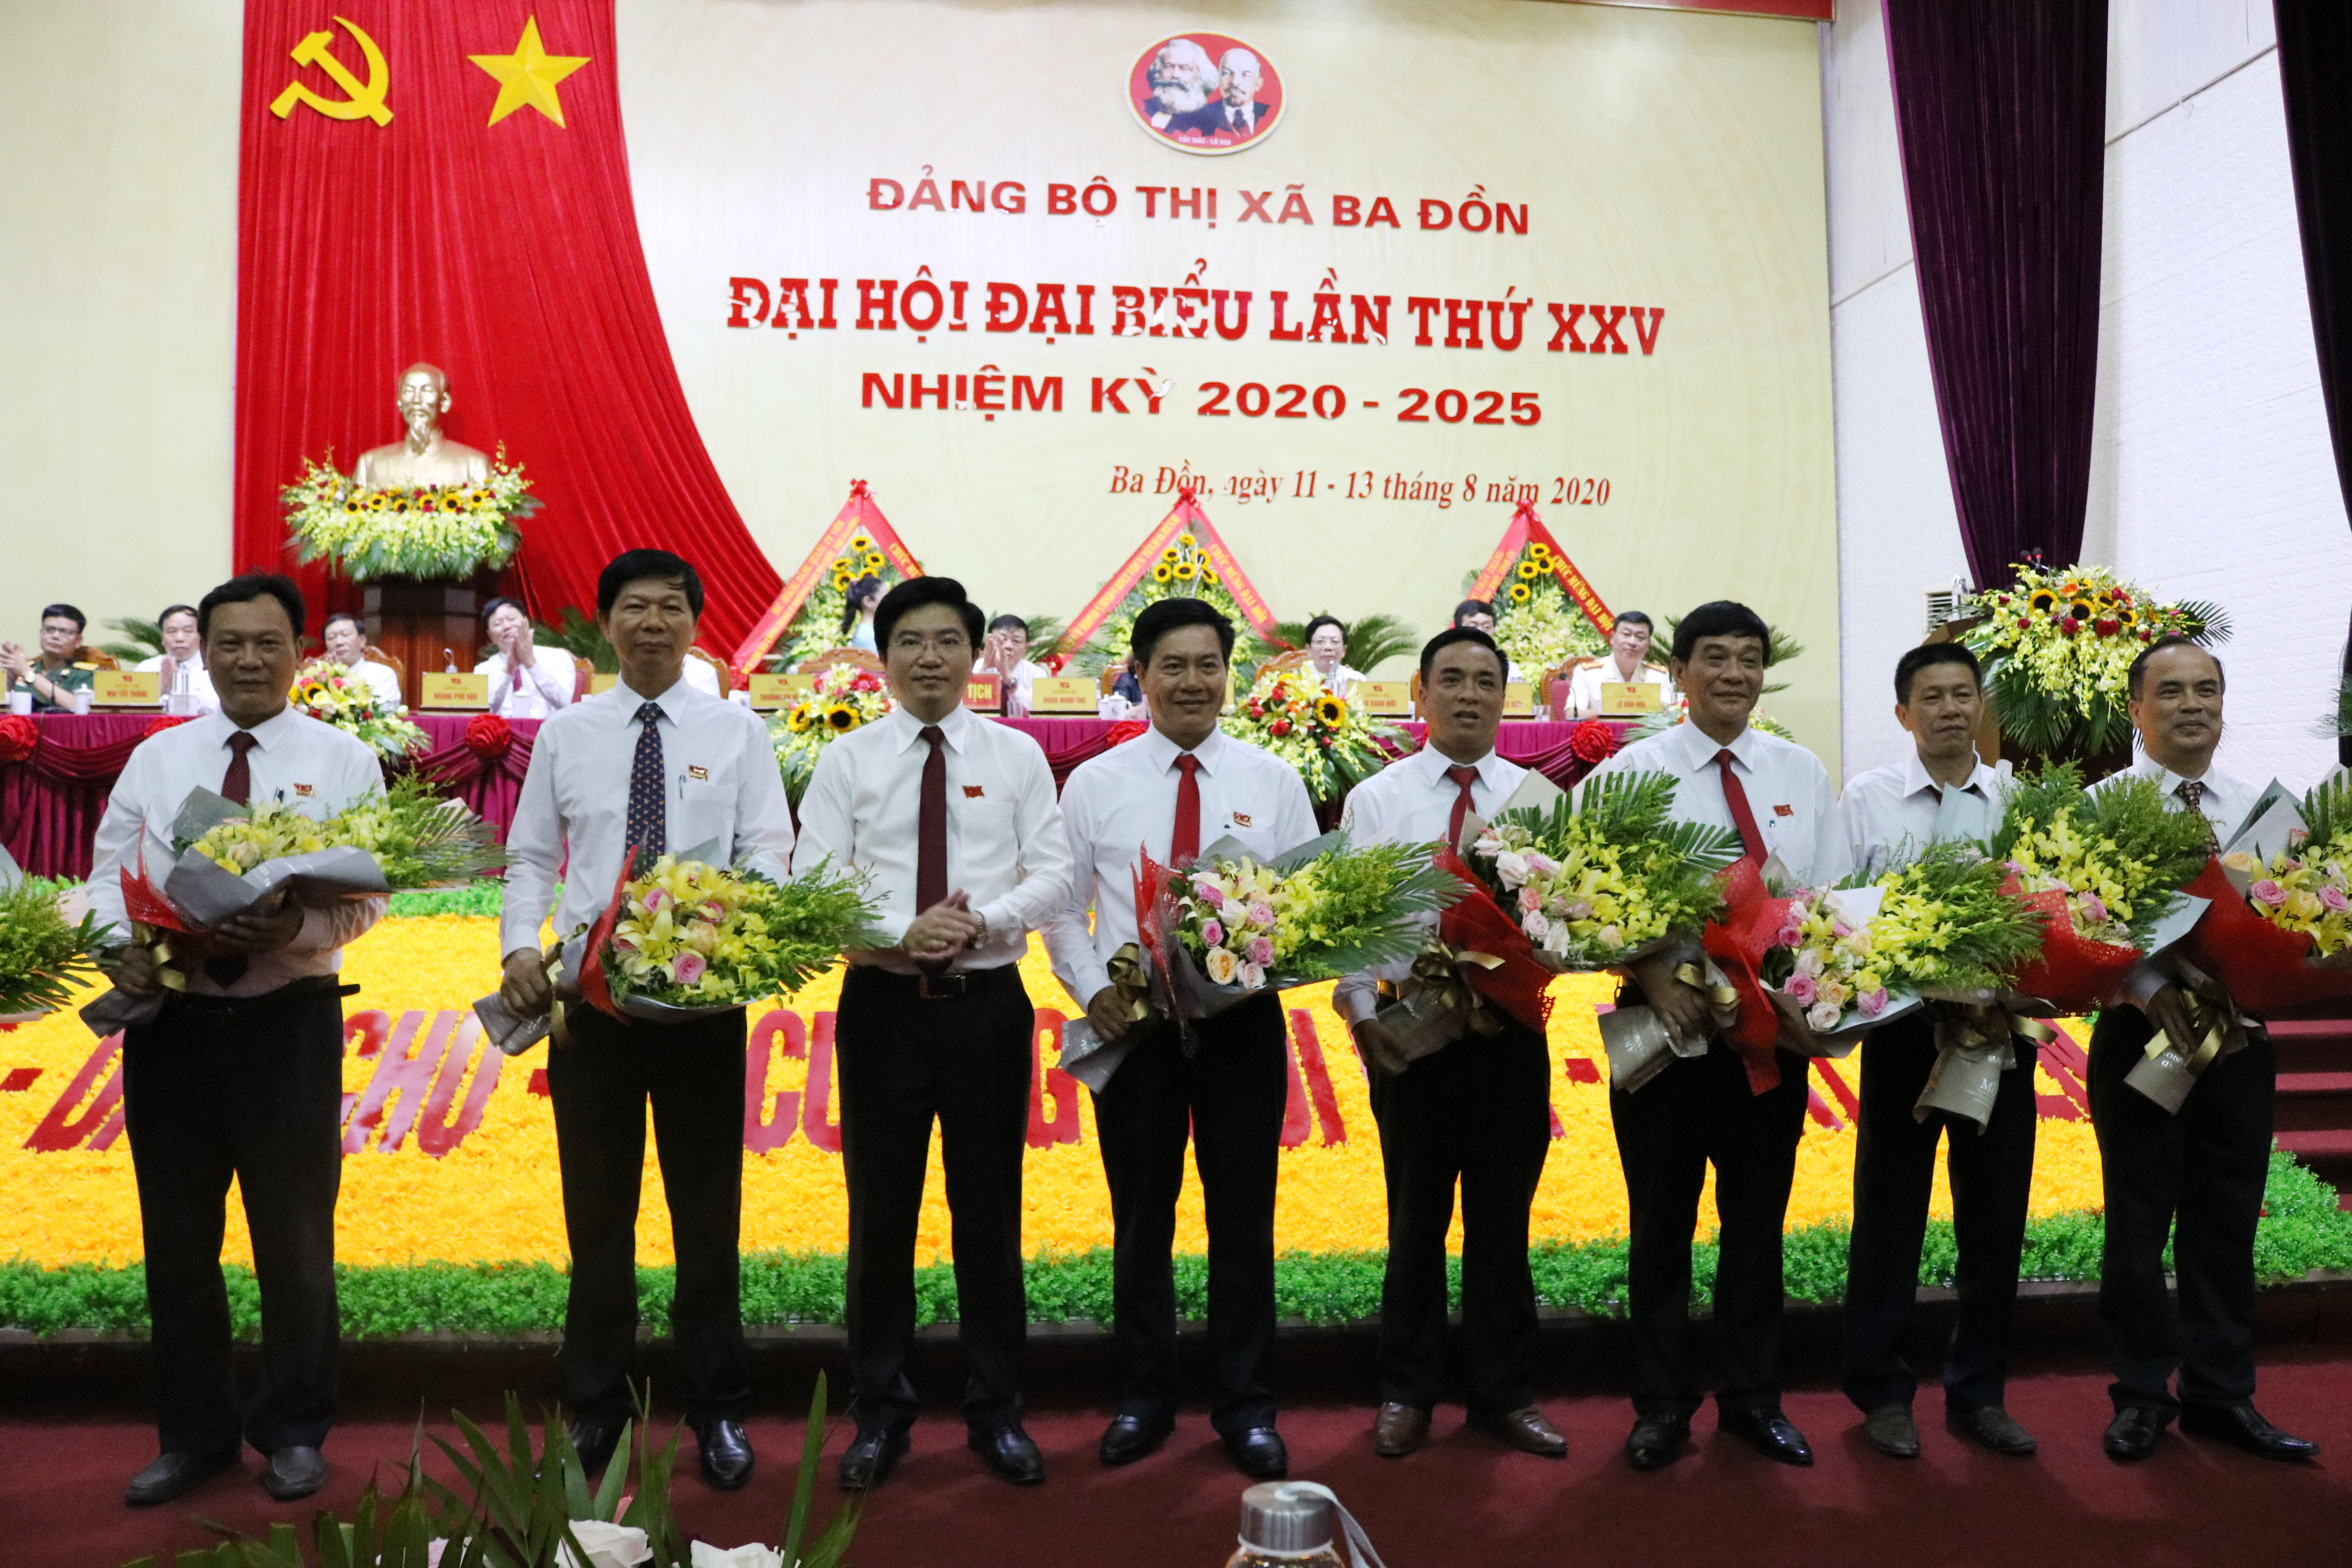 Đồng chí Trương An Ninh, Ủy viên Ban Thường vụ Tỉnh ủy, Bí thư Thị ủy Ba Đồn tặng hoa các đồng chí không tham gia Ban chấp hành khóa XXV, nhiệm kỳ 2020 - 2025